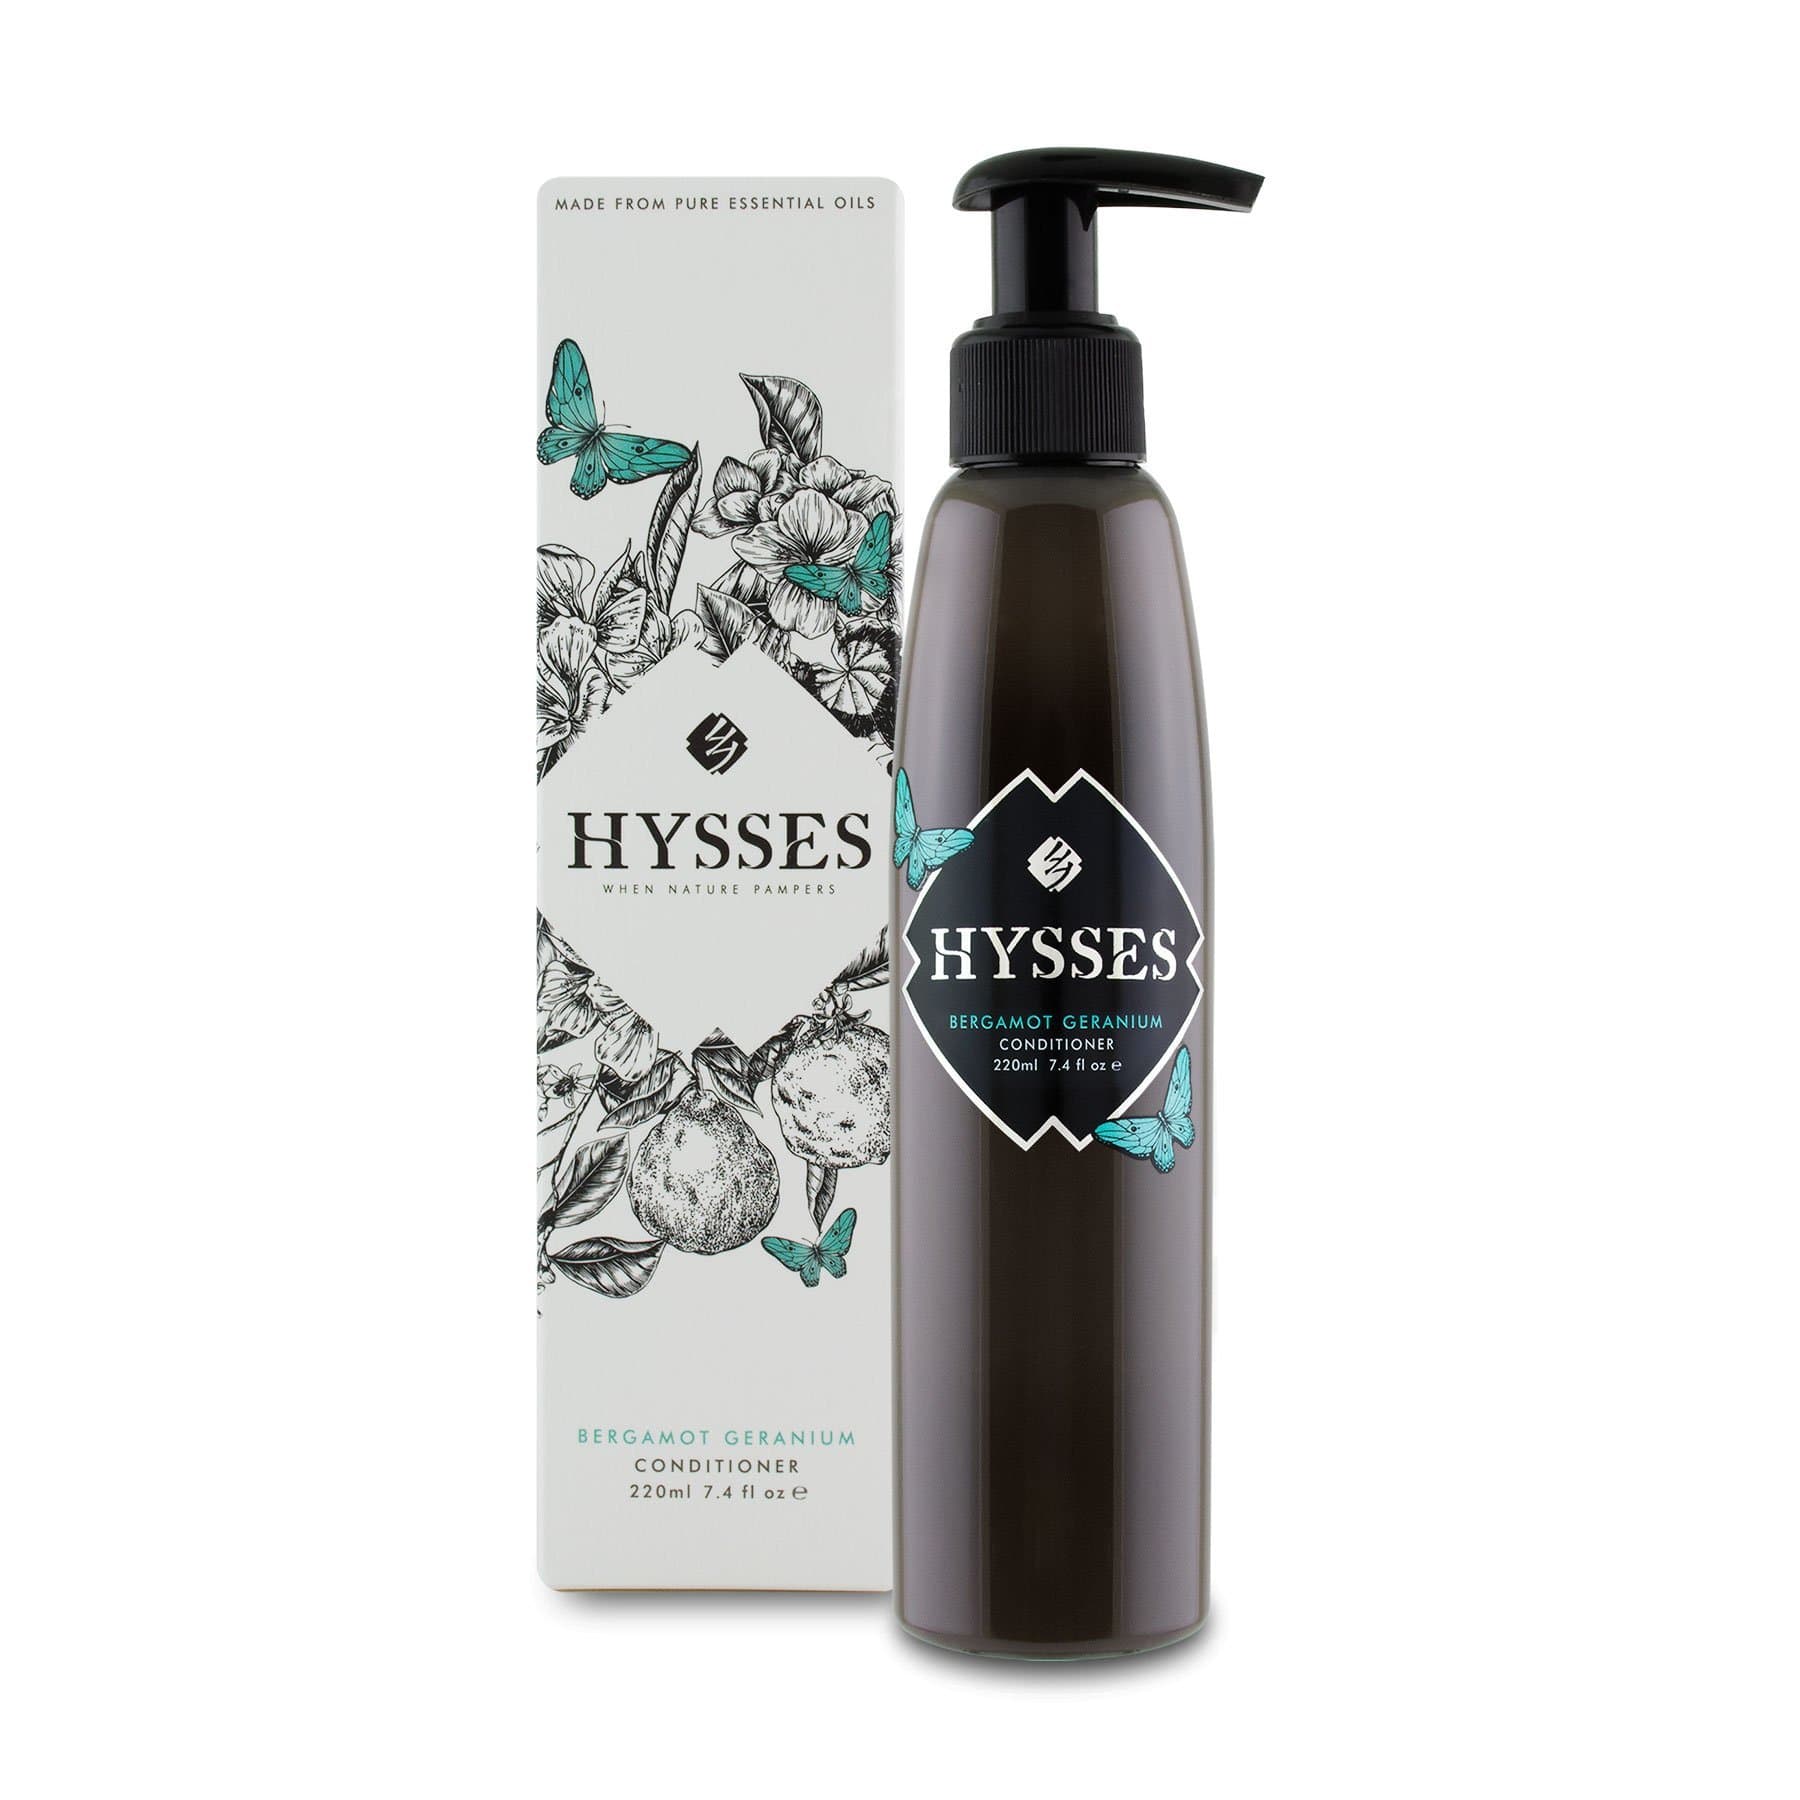 Hysses Hair Care 220ml Conditioner Bergamot Geranium